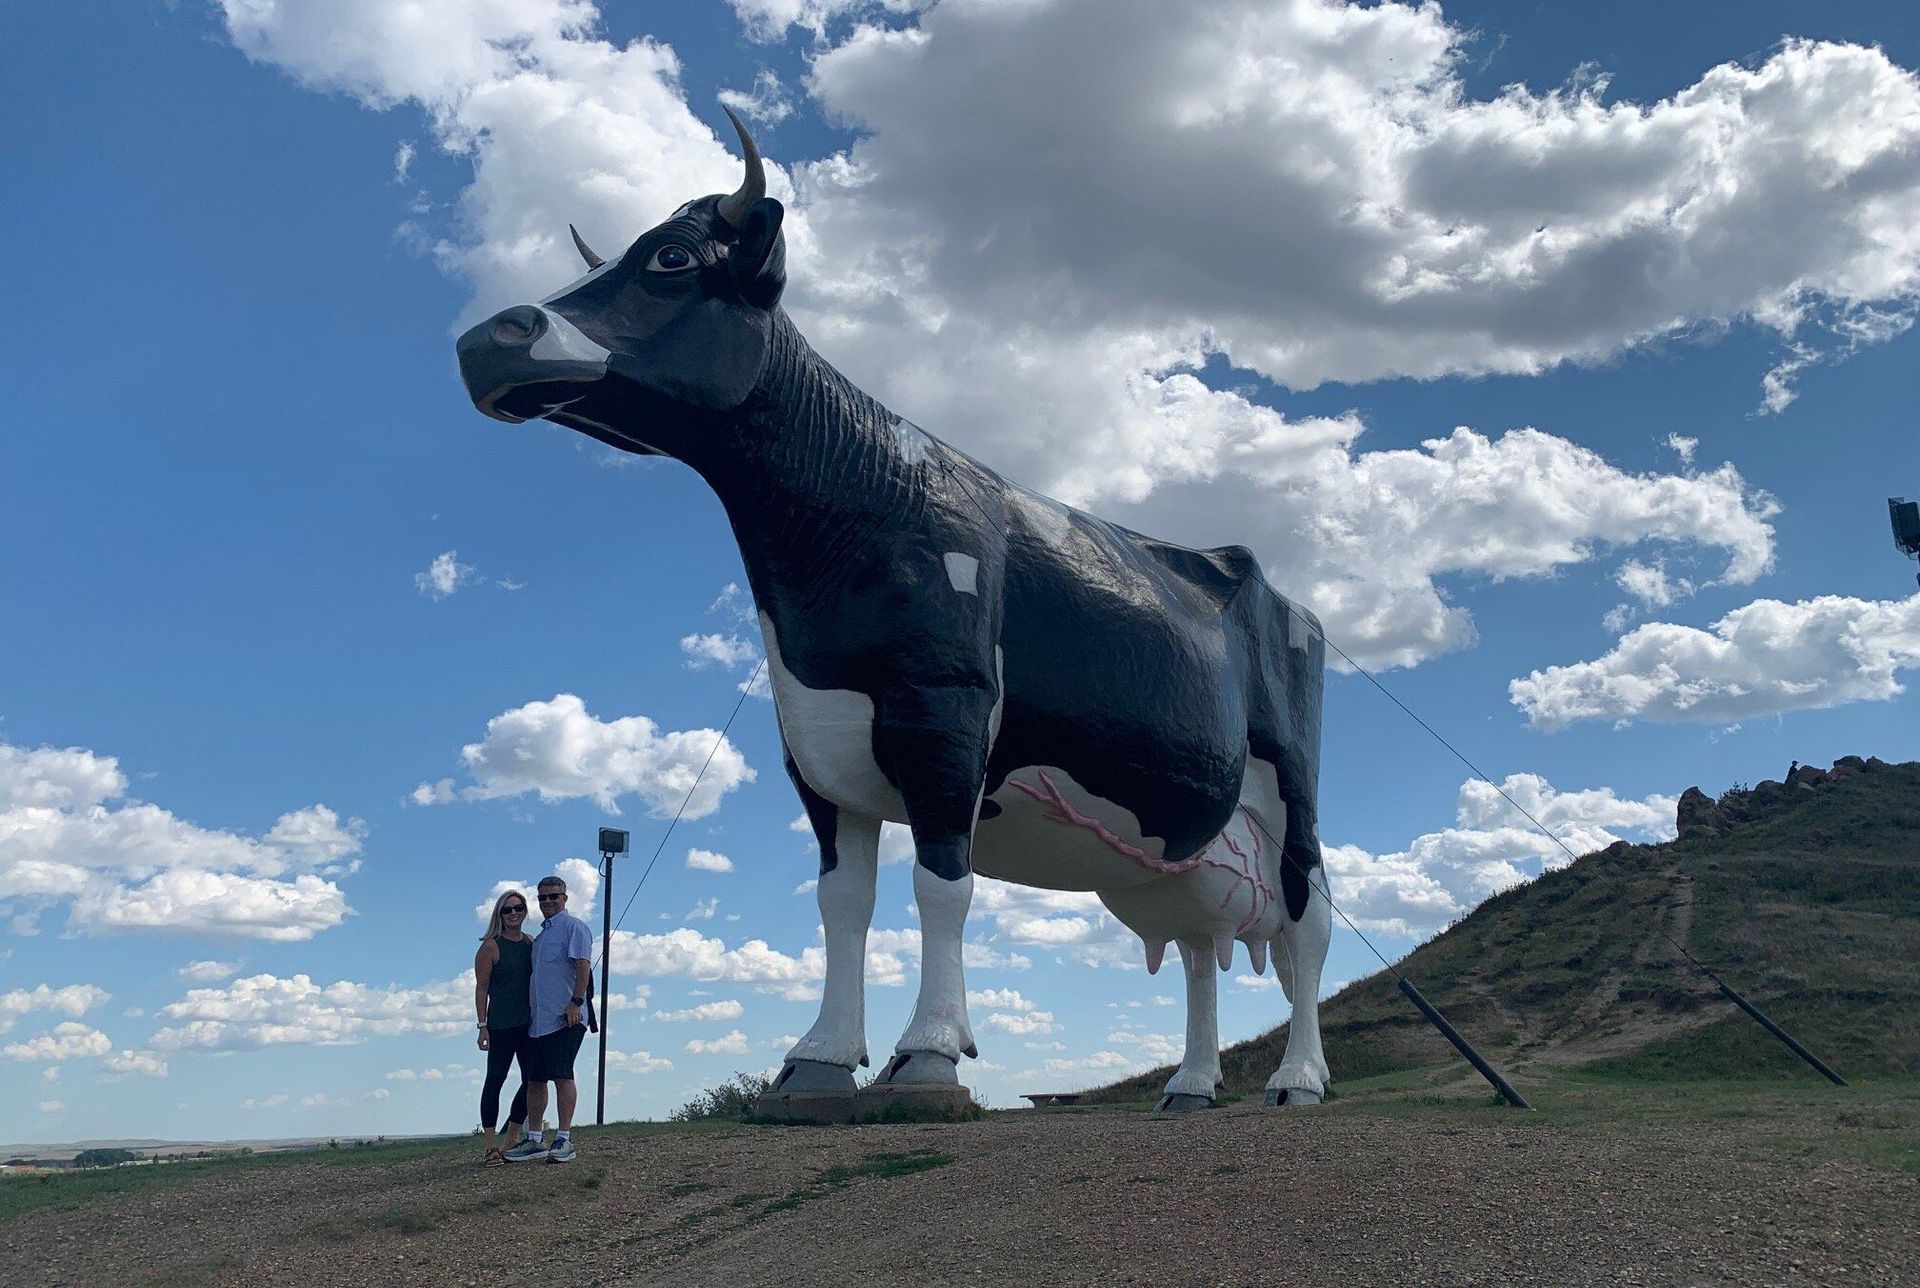 World's Largest Holstein Cow Sculpture: world record in New Salem, North Dakota